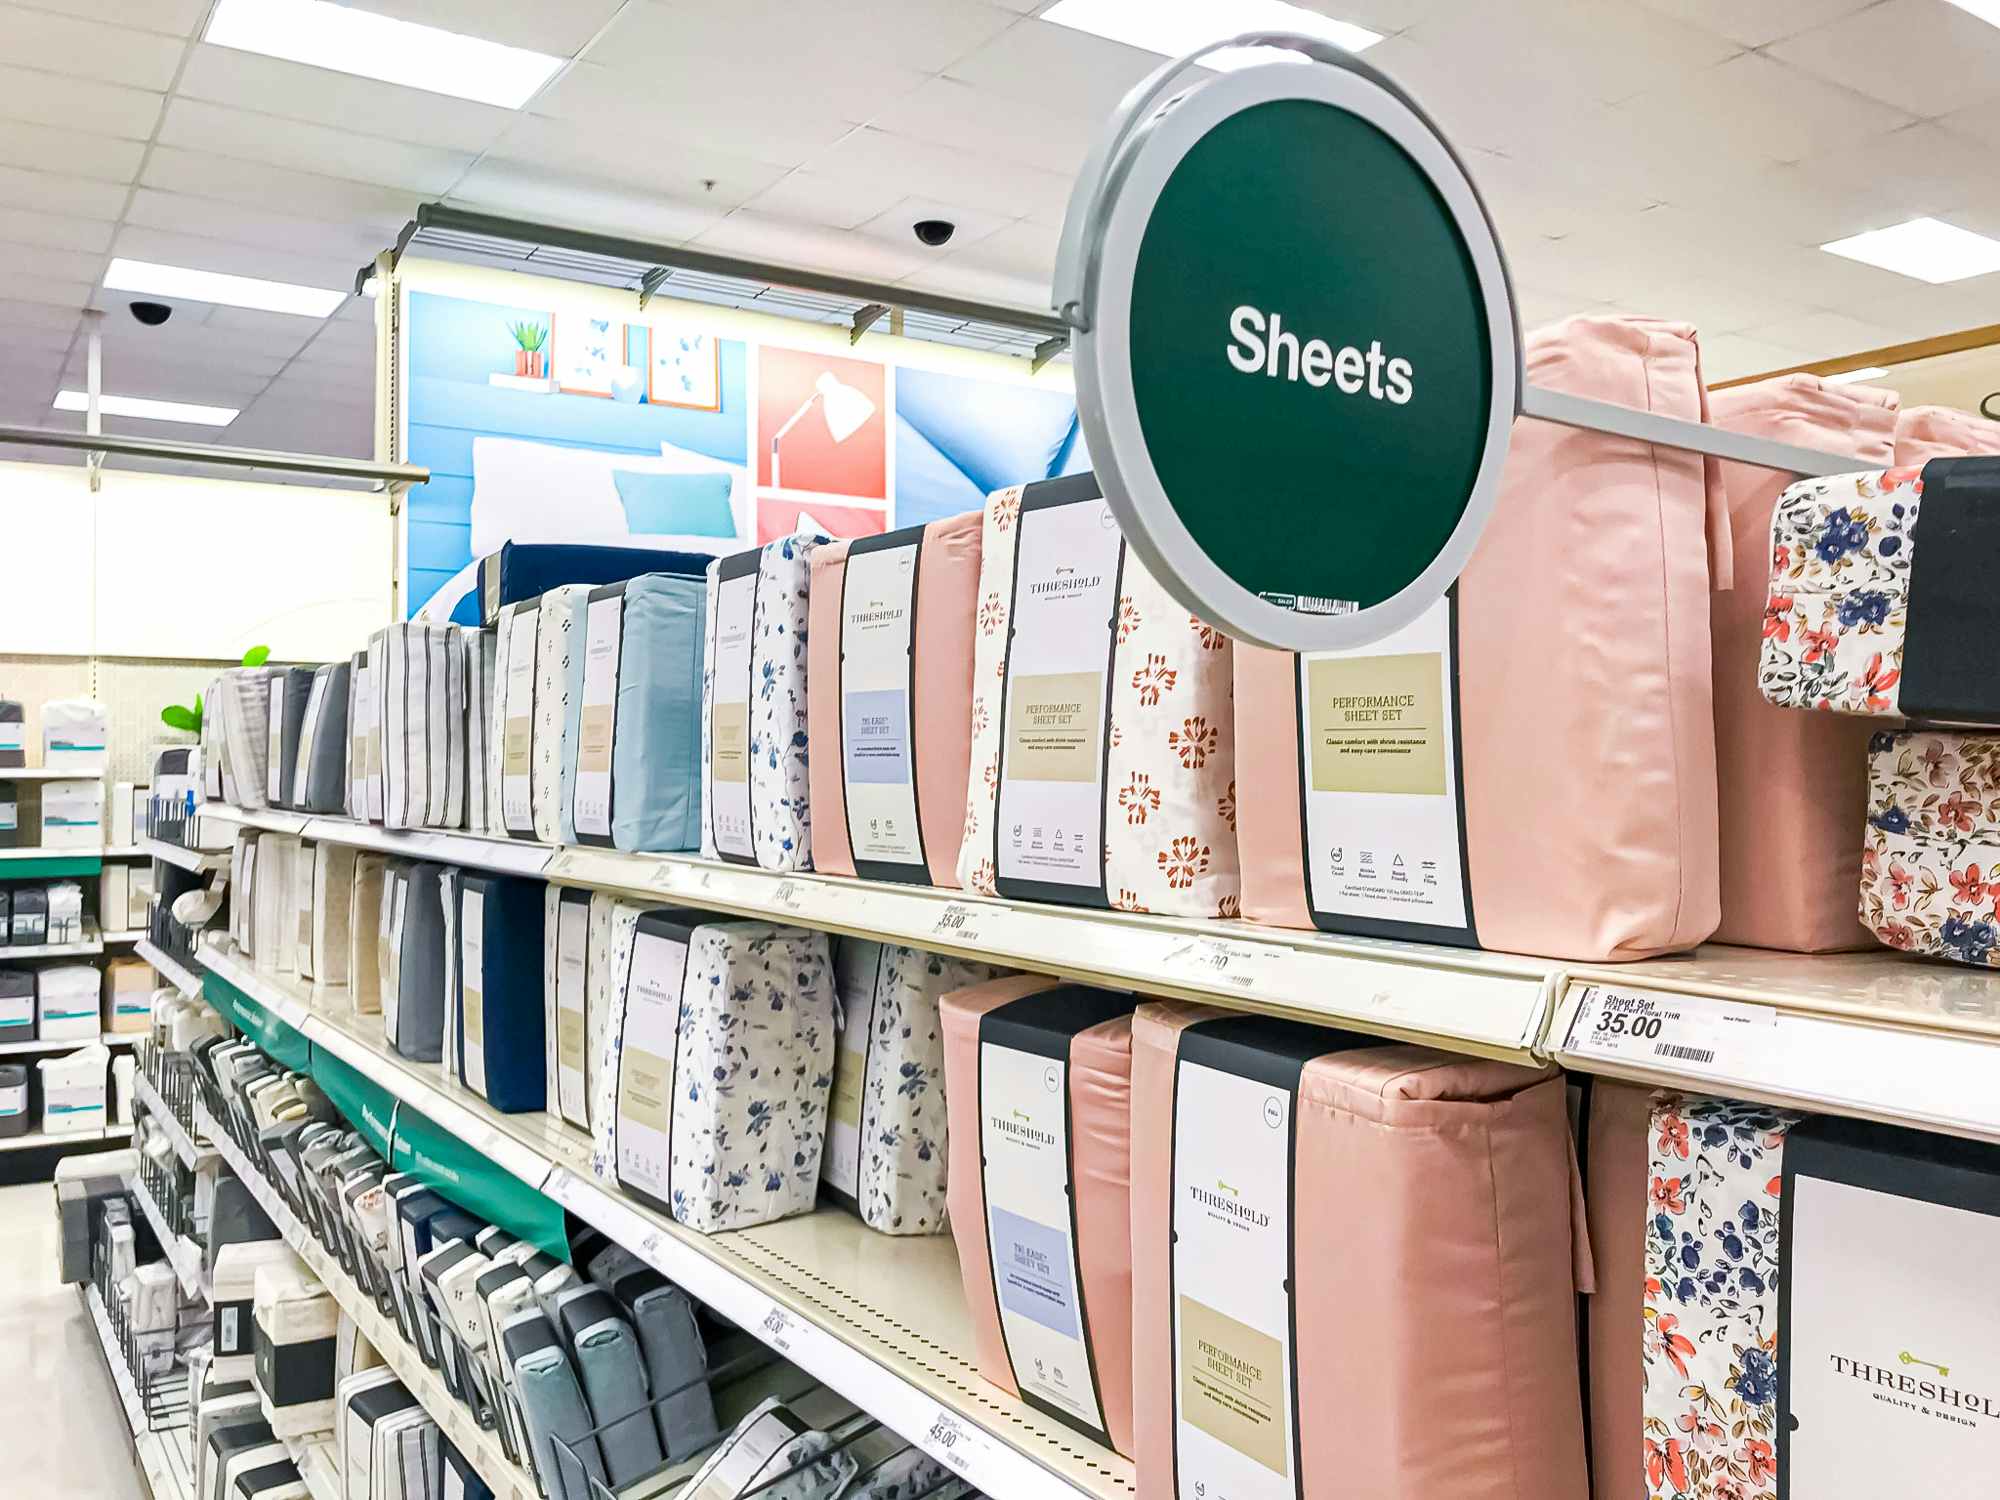 An aisle of sheets at Target